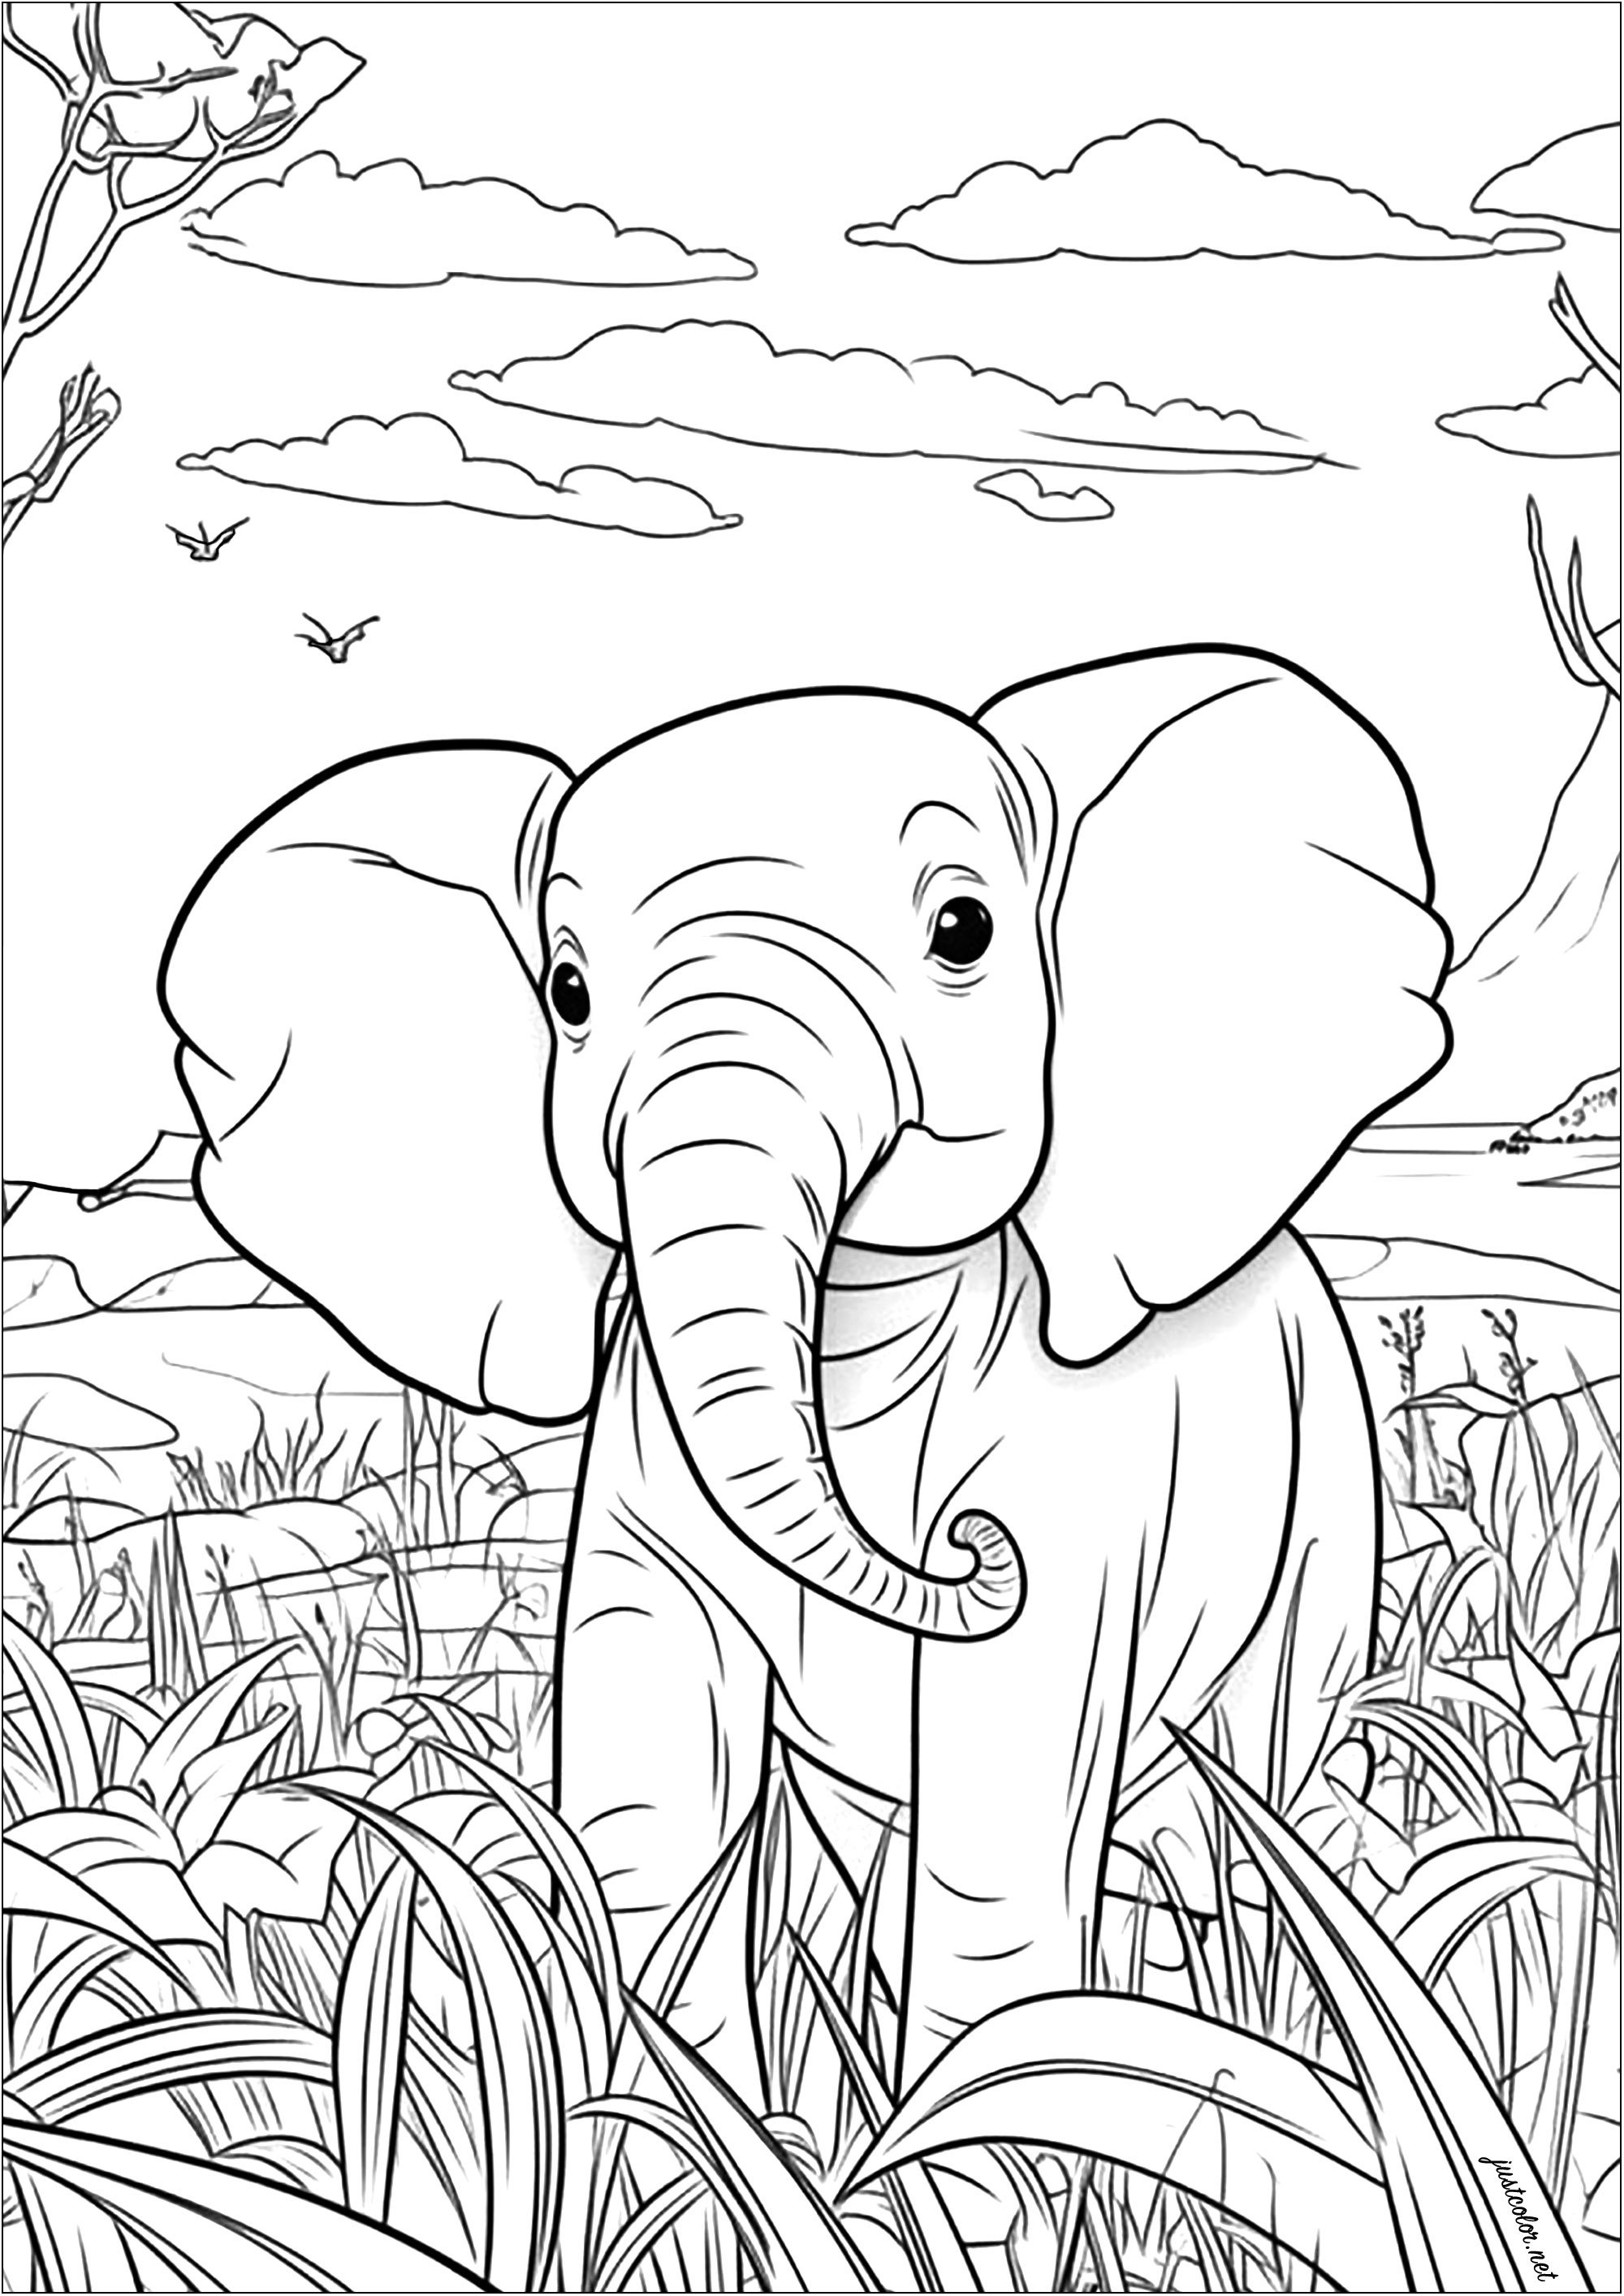 Esta bonita página para colorear muestra a un joven elefante paseando por la sabana. Puedes ver que está rodeado de árboles altos y hierba.